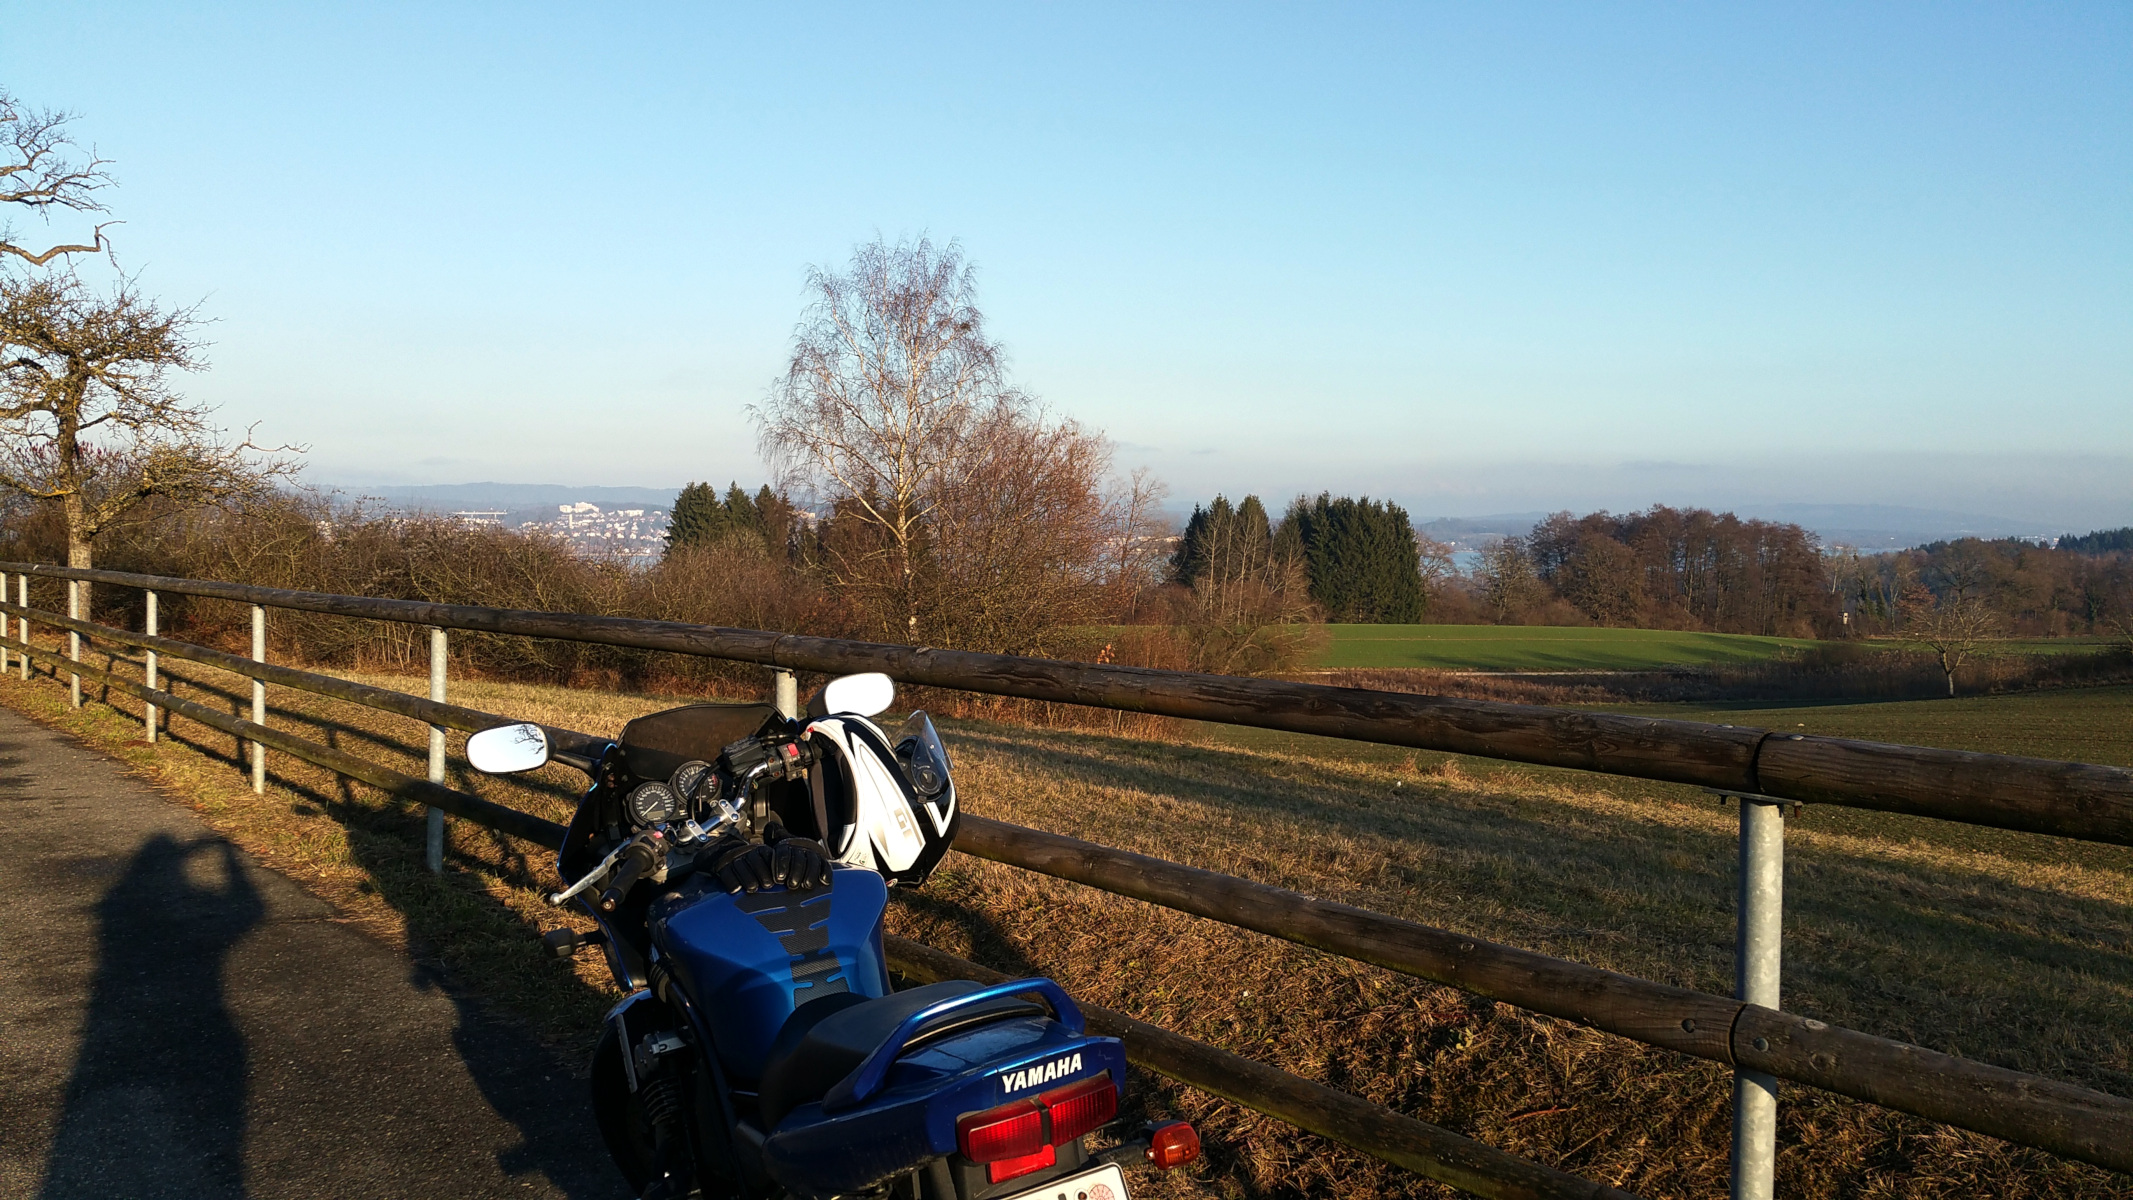 Motorrad, See, Schatten - miradlo Versanddepot - Motocross-Adventskalender